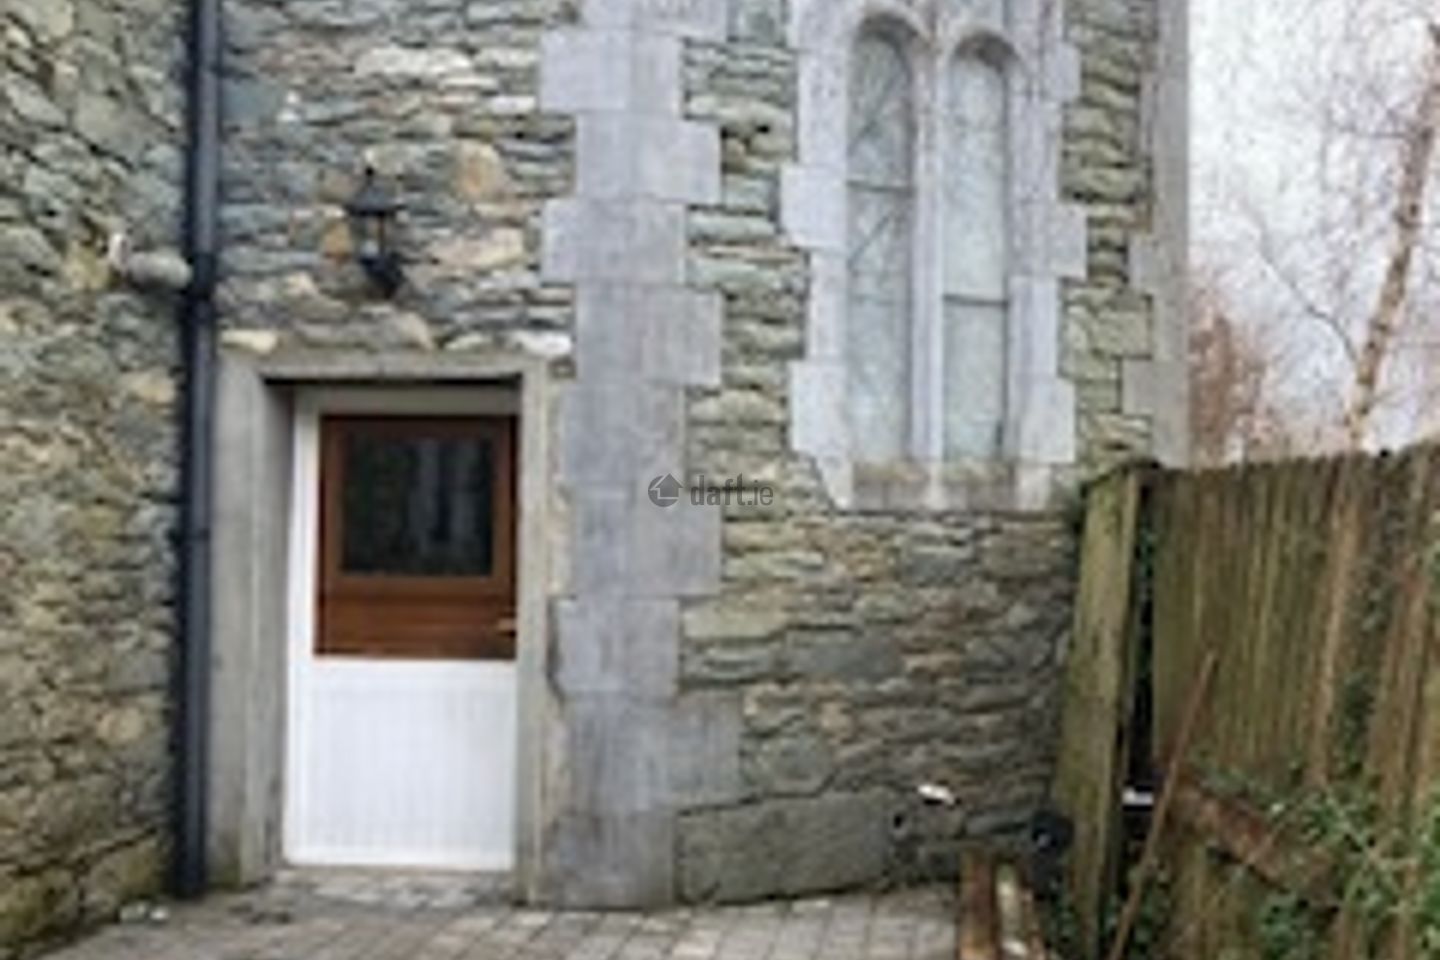 Apartment 2, Loreto Chapel, Killarney, Co. Kerry